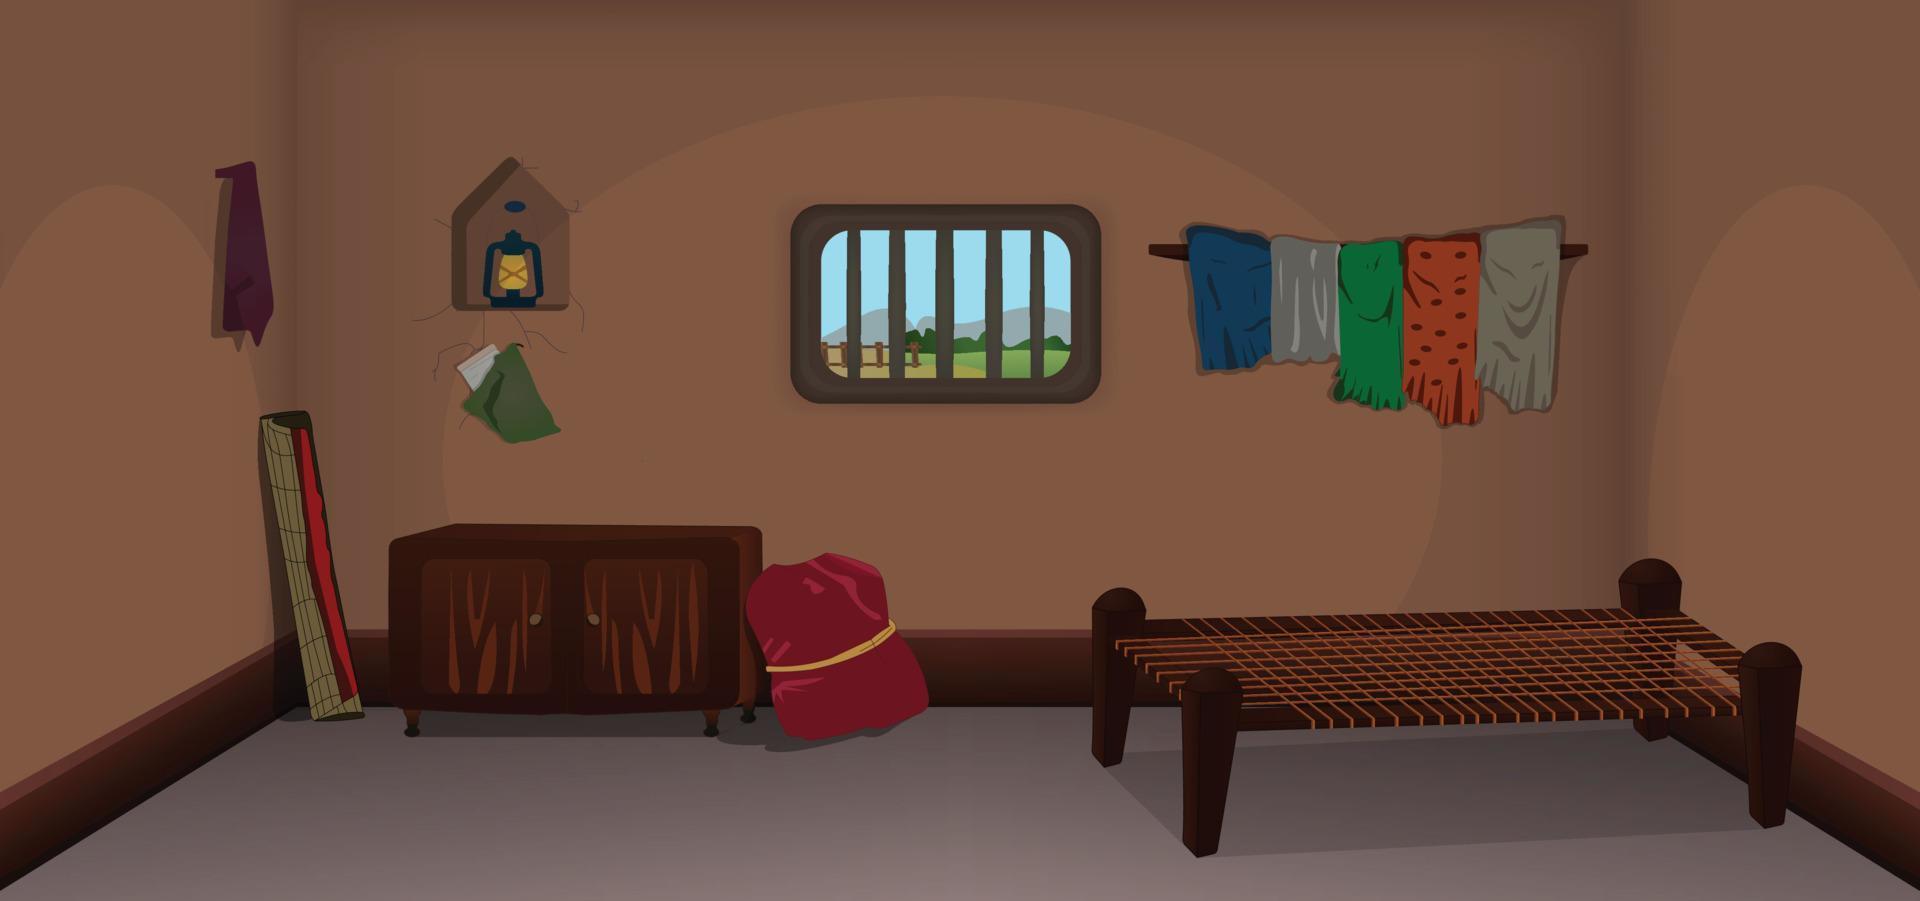 villaggio camera dentro cartone animato sfondo vettore, povero camera interno illustrazione. vettore